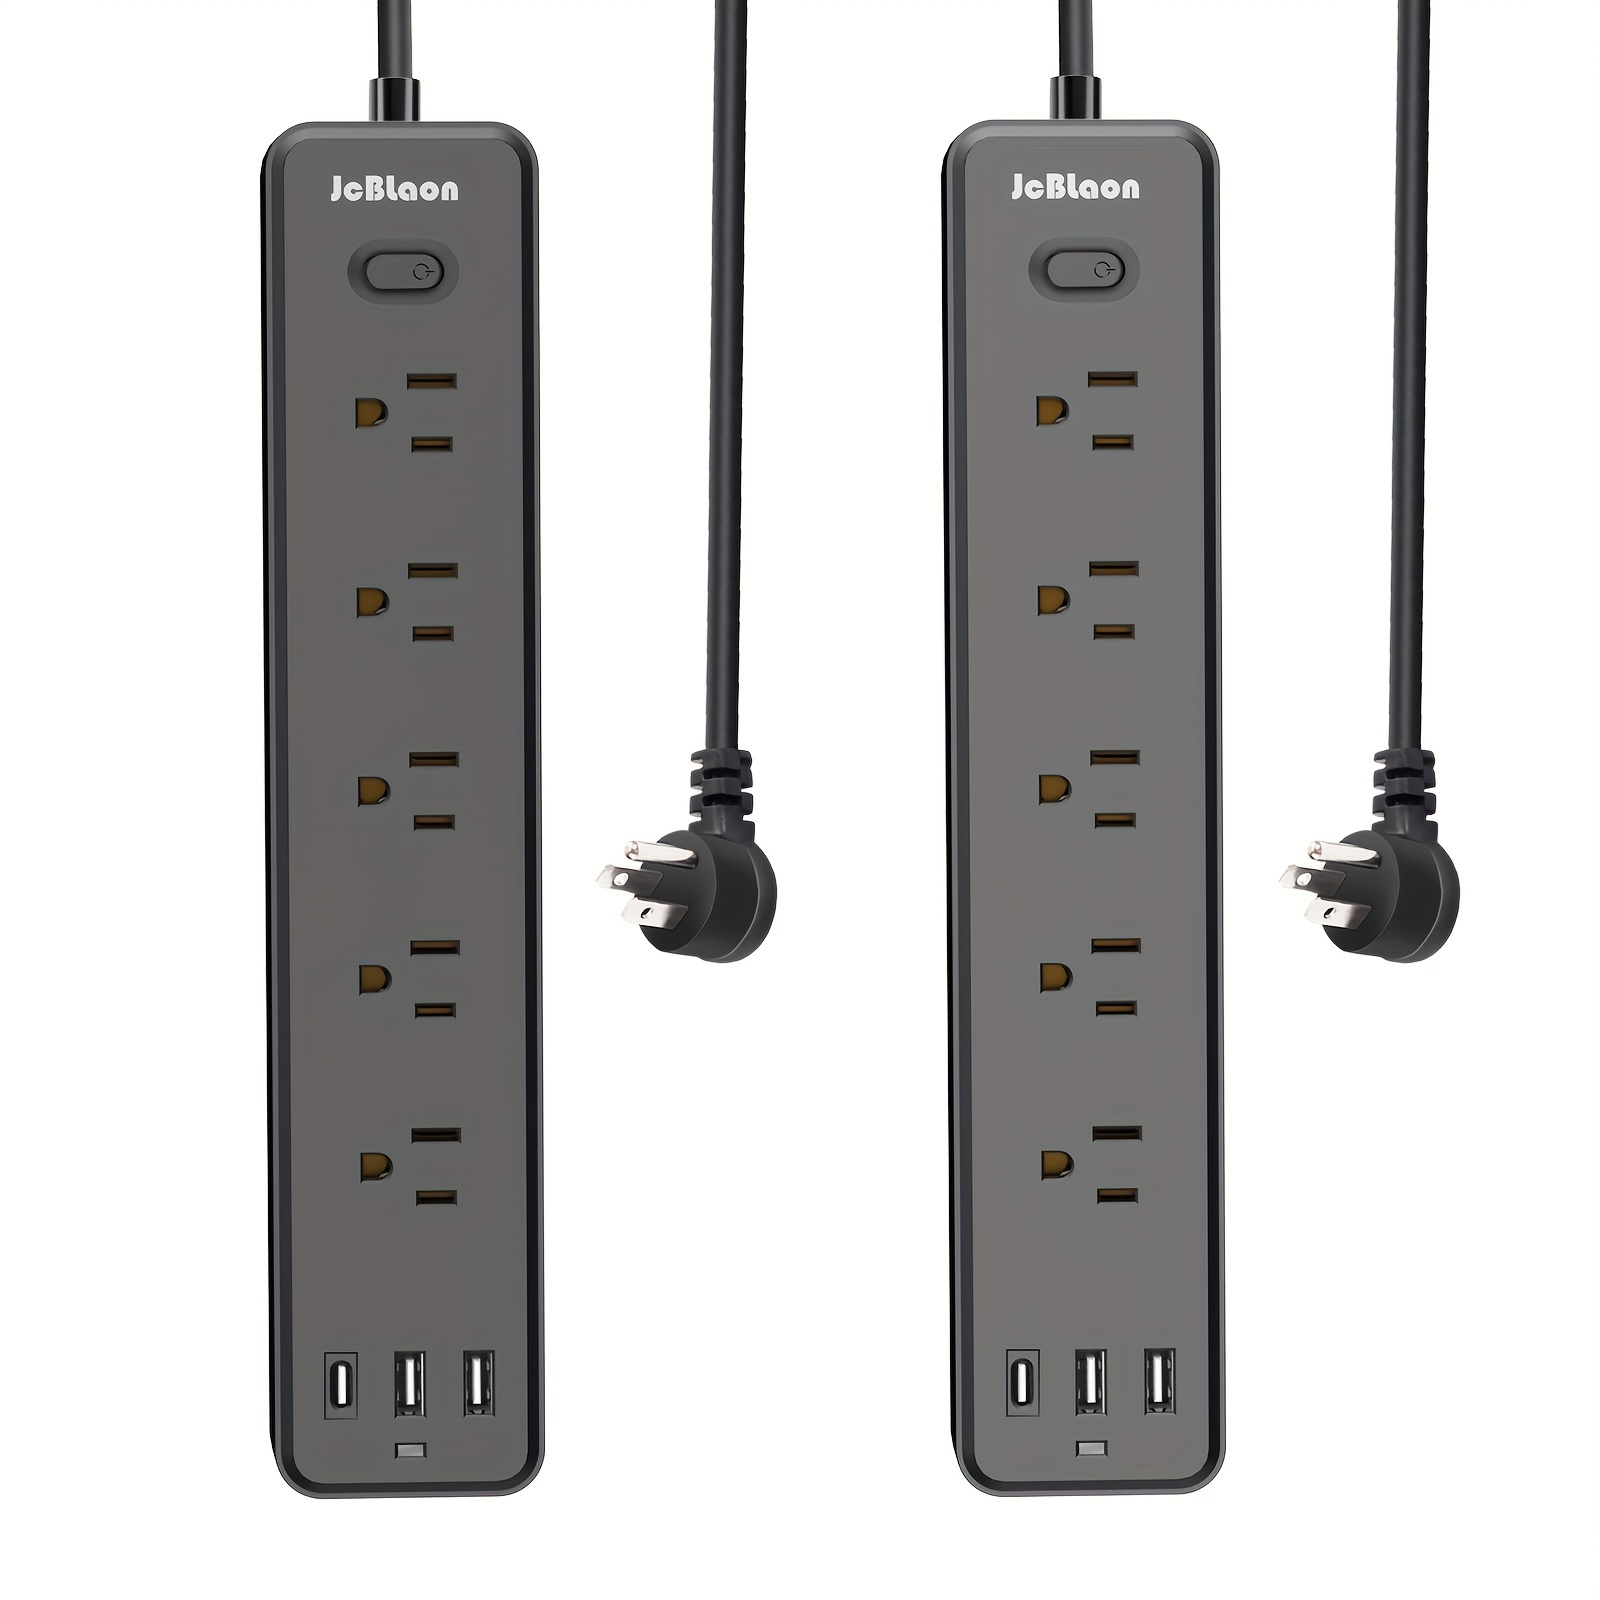  Cable de extensión de 10 pies y 15 pies, regleta de enchufe  plano con enchufes ampliamente espaciados, puertos USB para montaje en pared,  cable de extensión largo con múltiples tomas de